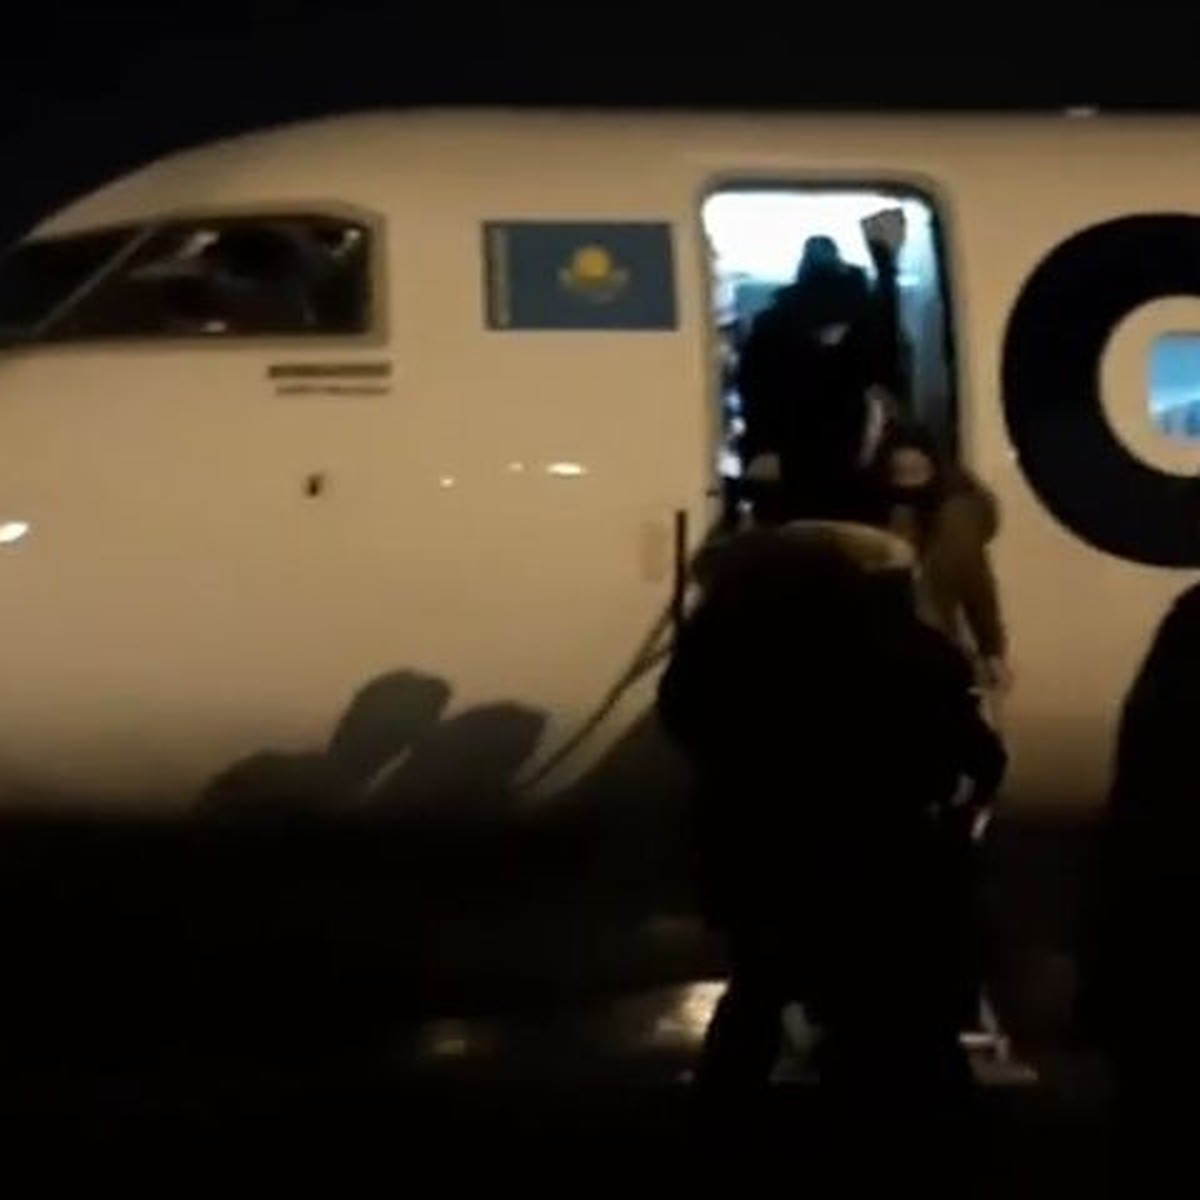 Аэропорт стерегли автоматчики, внутри были слышны крики, визги...»: россиянка рассказала, как улетала из Нур-Султана последним рейсом - KP.RU